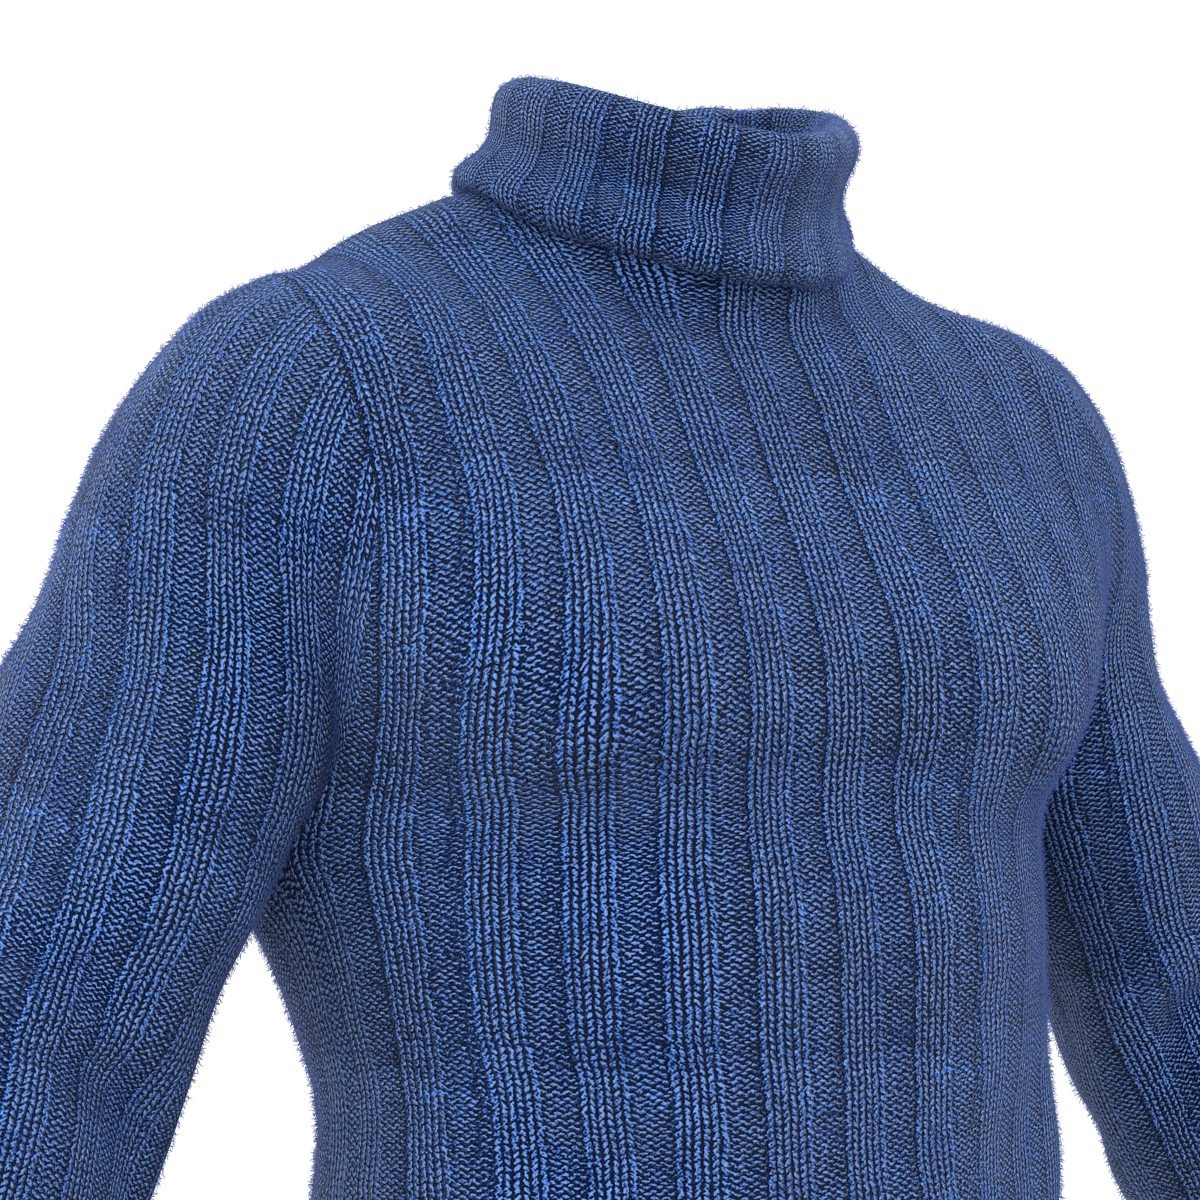 3d model wool sweater blue